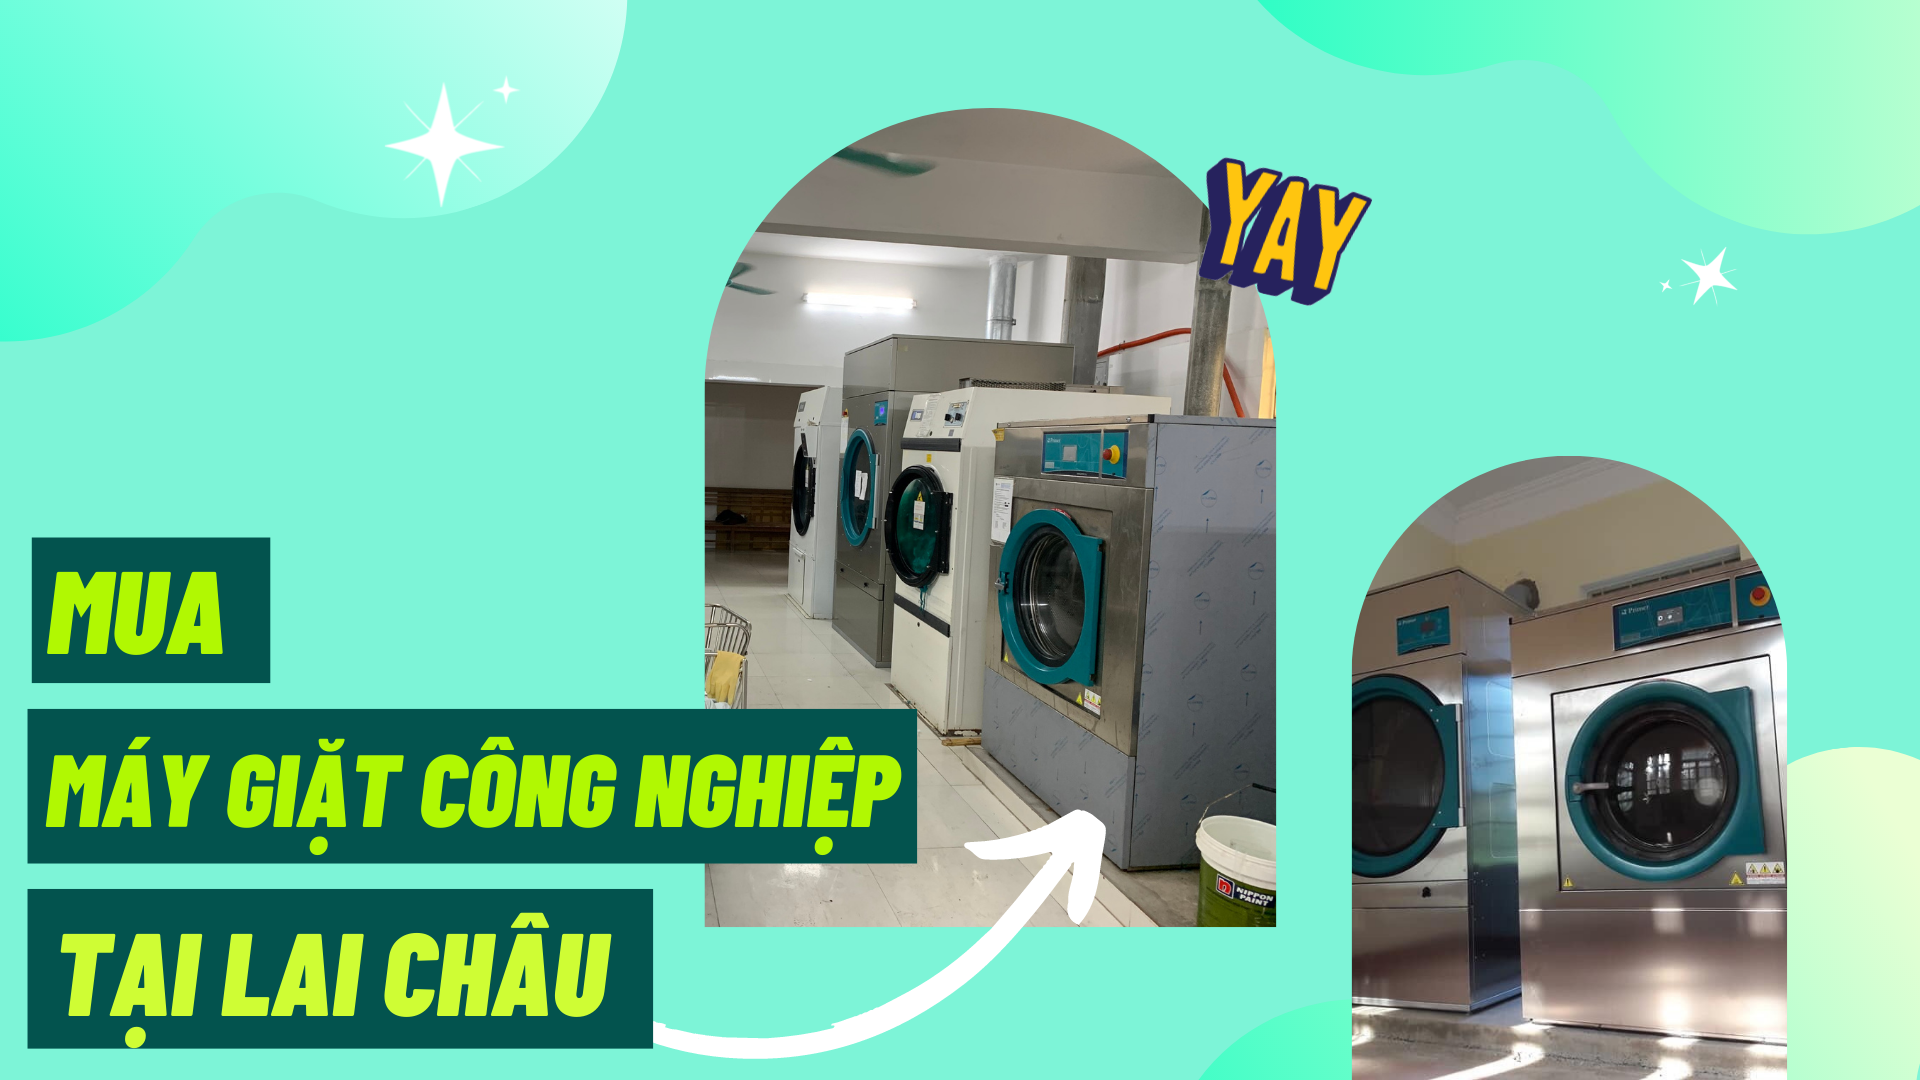 Địa chỉ uy tín cung cấp máy giặt công nghiệp tại Lai Châu